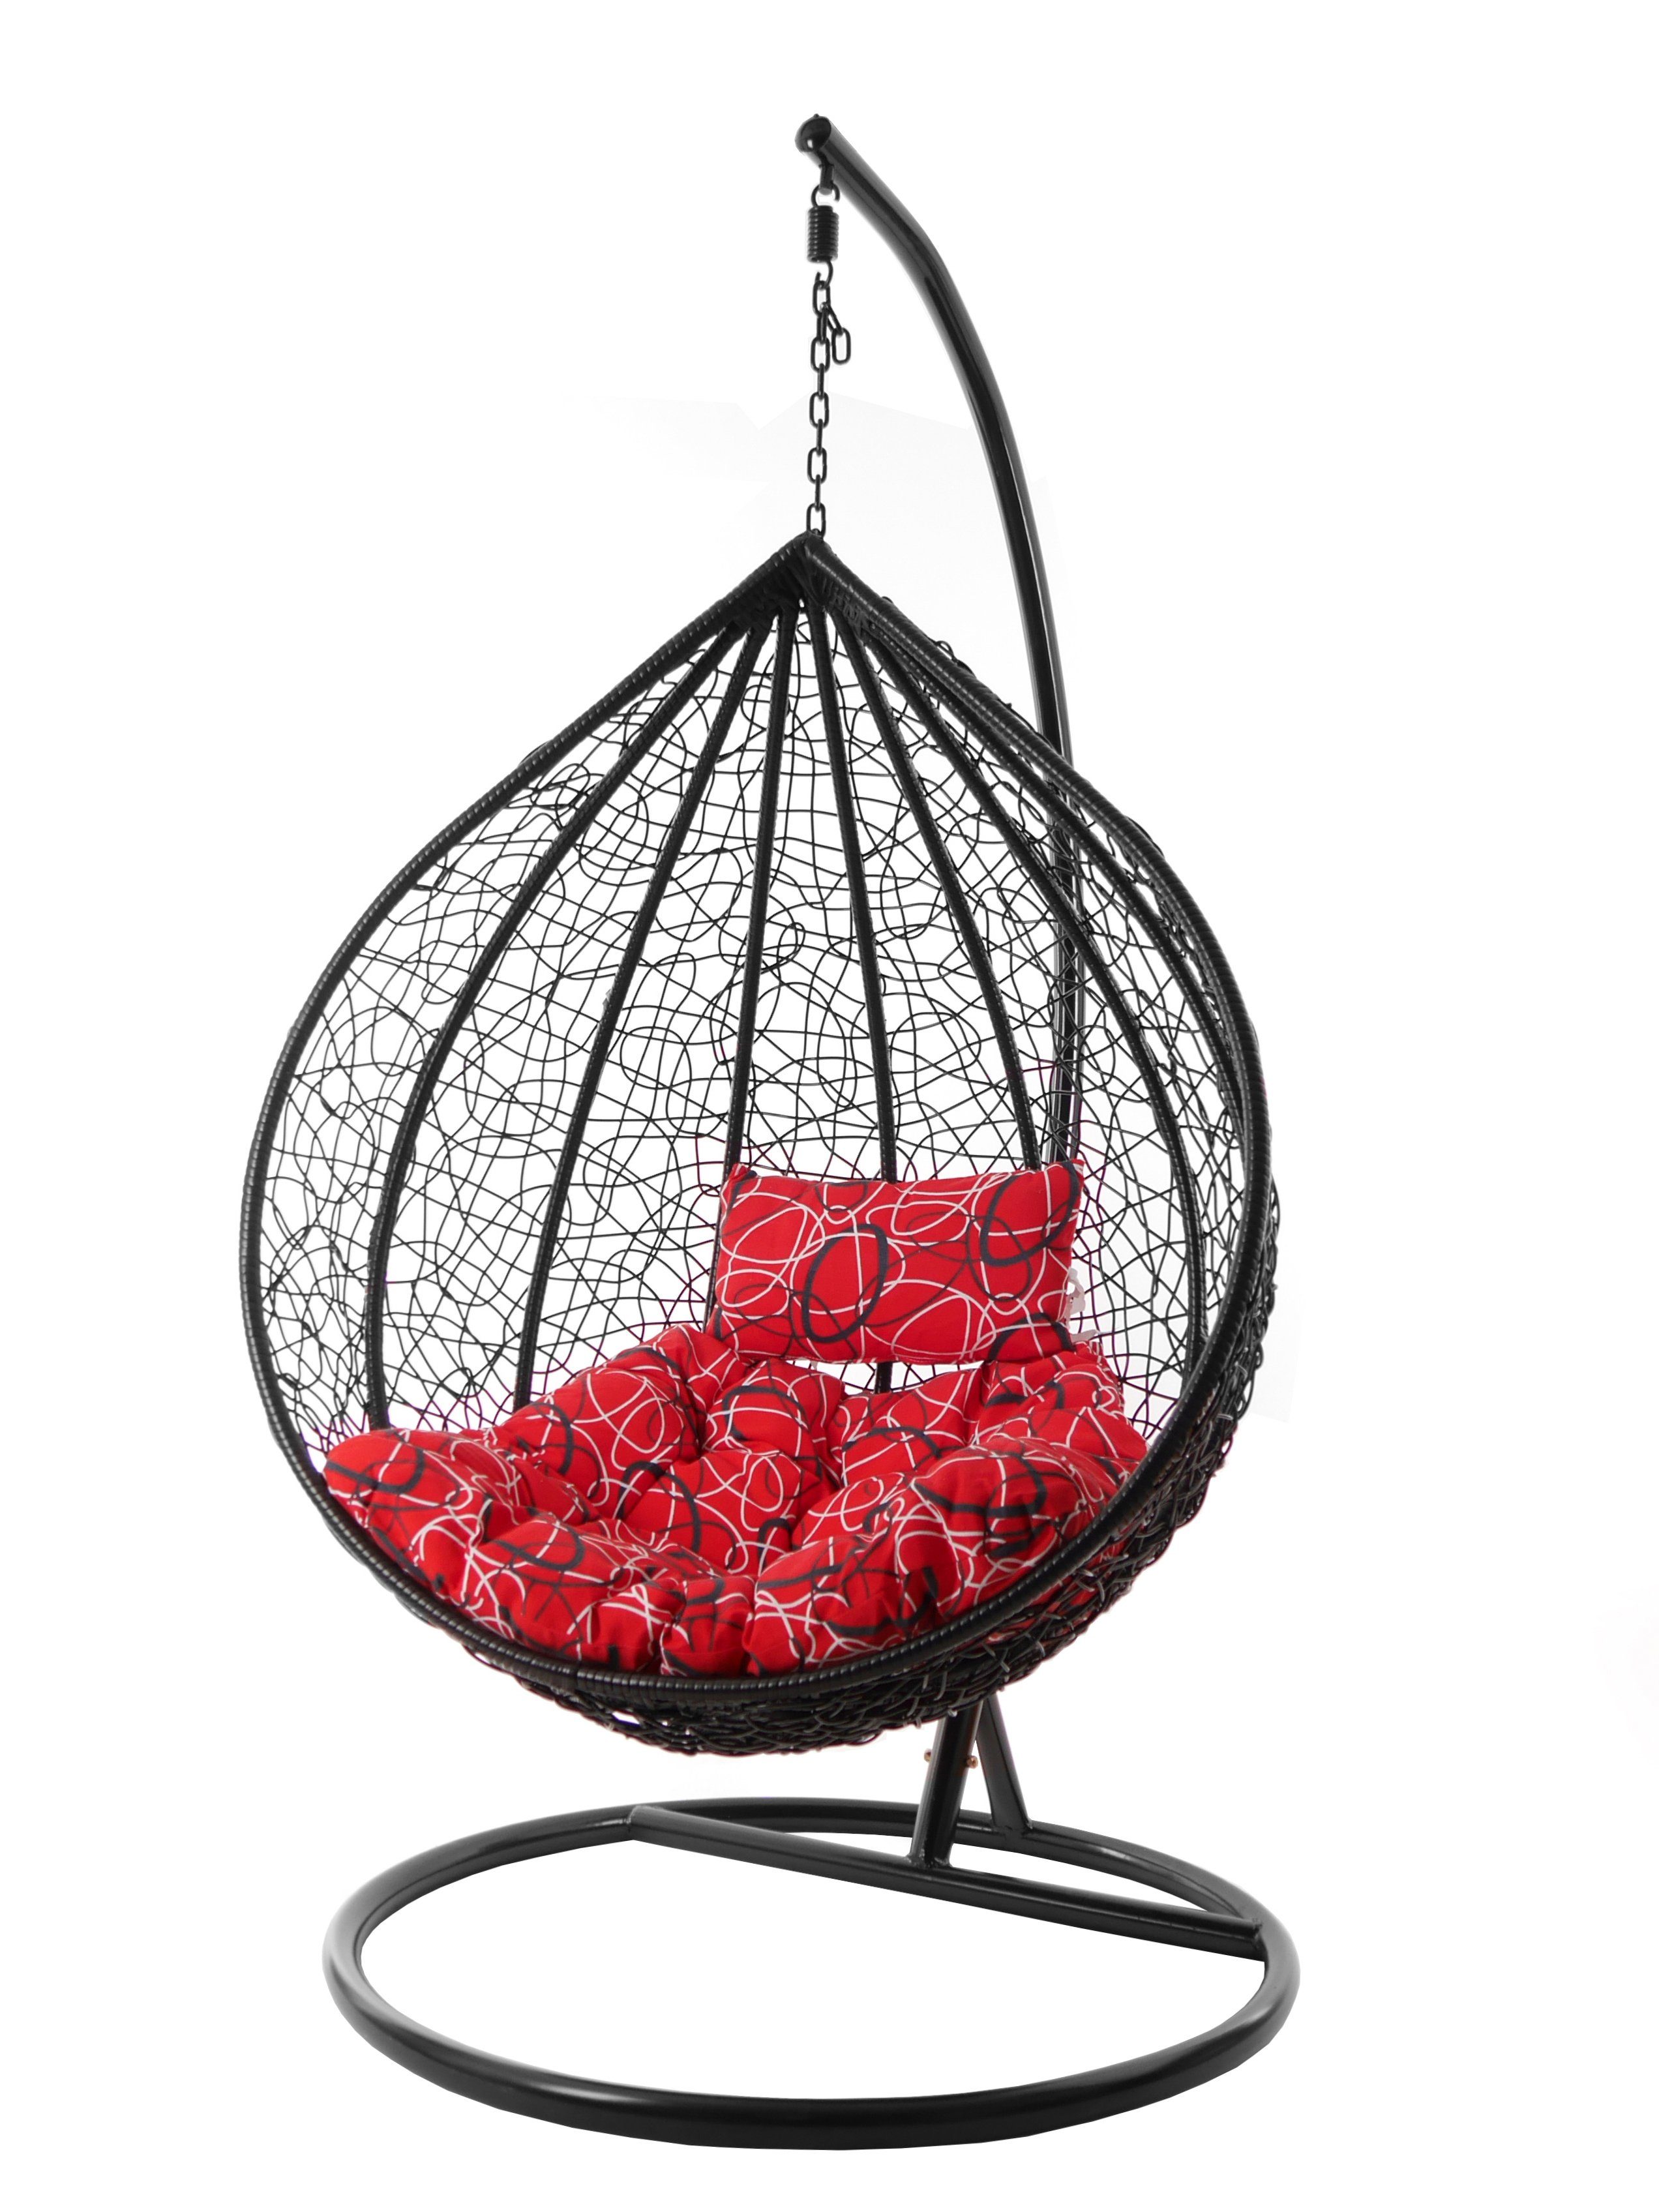 KIDEO Hängesessel Hängesessel MANACOR schwarz, edles schwarz, moderner Swing Chair, Schwebesessel inklusive Gestell und Kissen rot gemustert (3088 red frizzy)